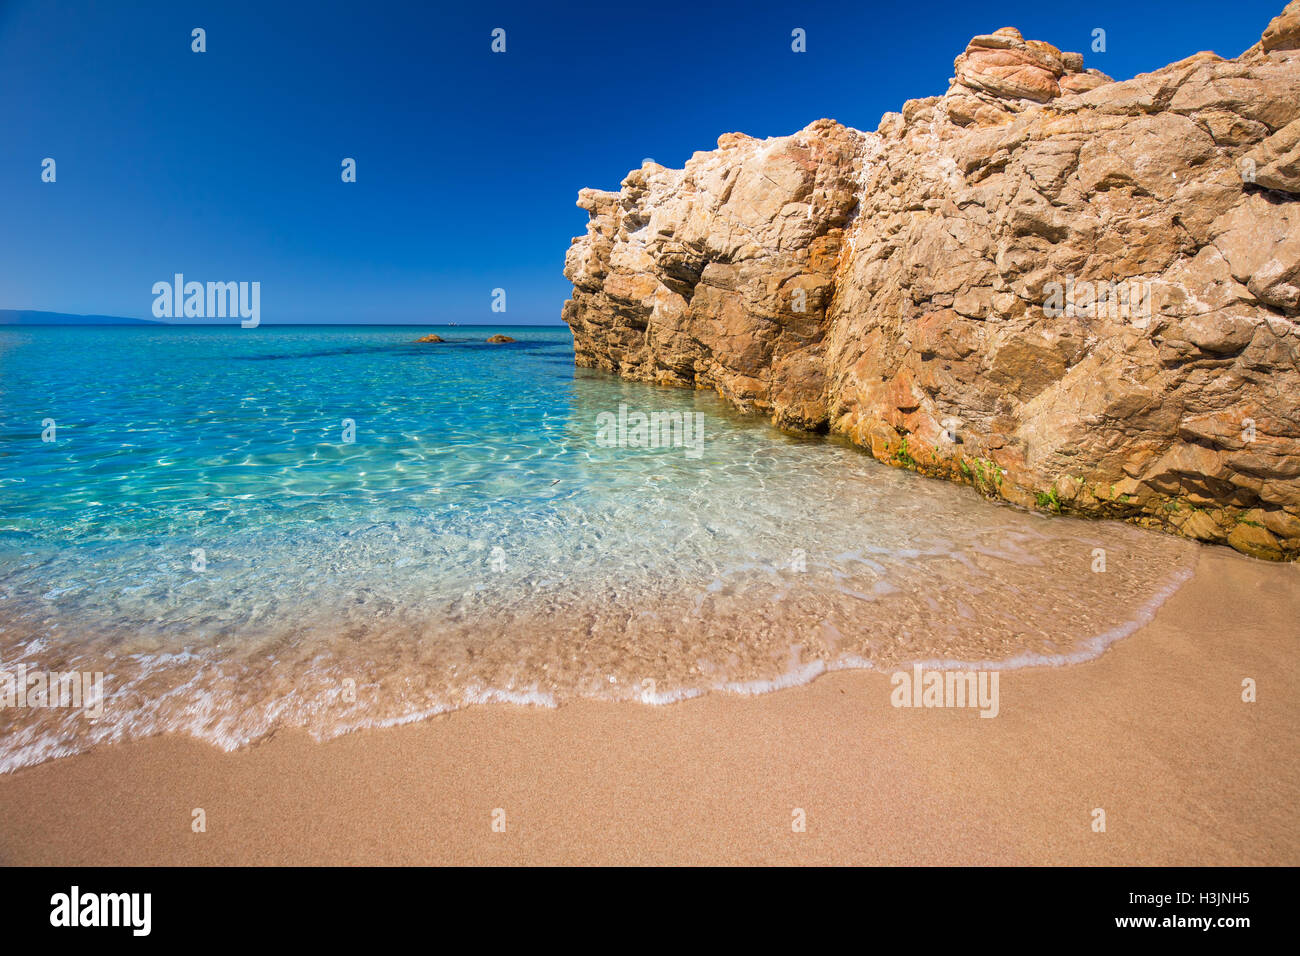 Una bellissima spiaggia di sabbia con rocce e tourquise acqua chiara vicino a Cargese Corsica, Francia, Europa. Foto Stock